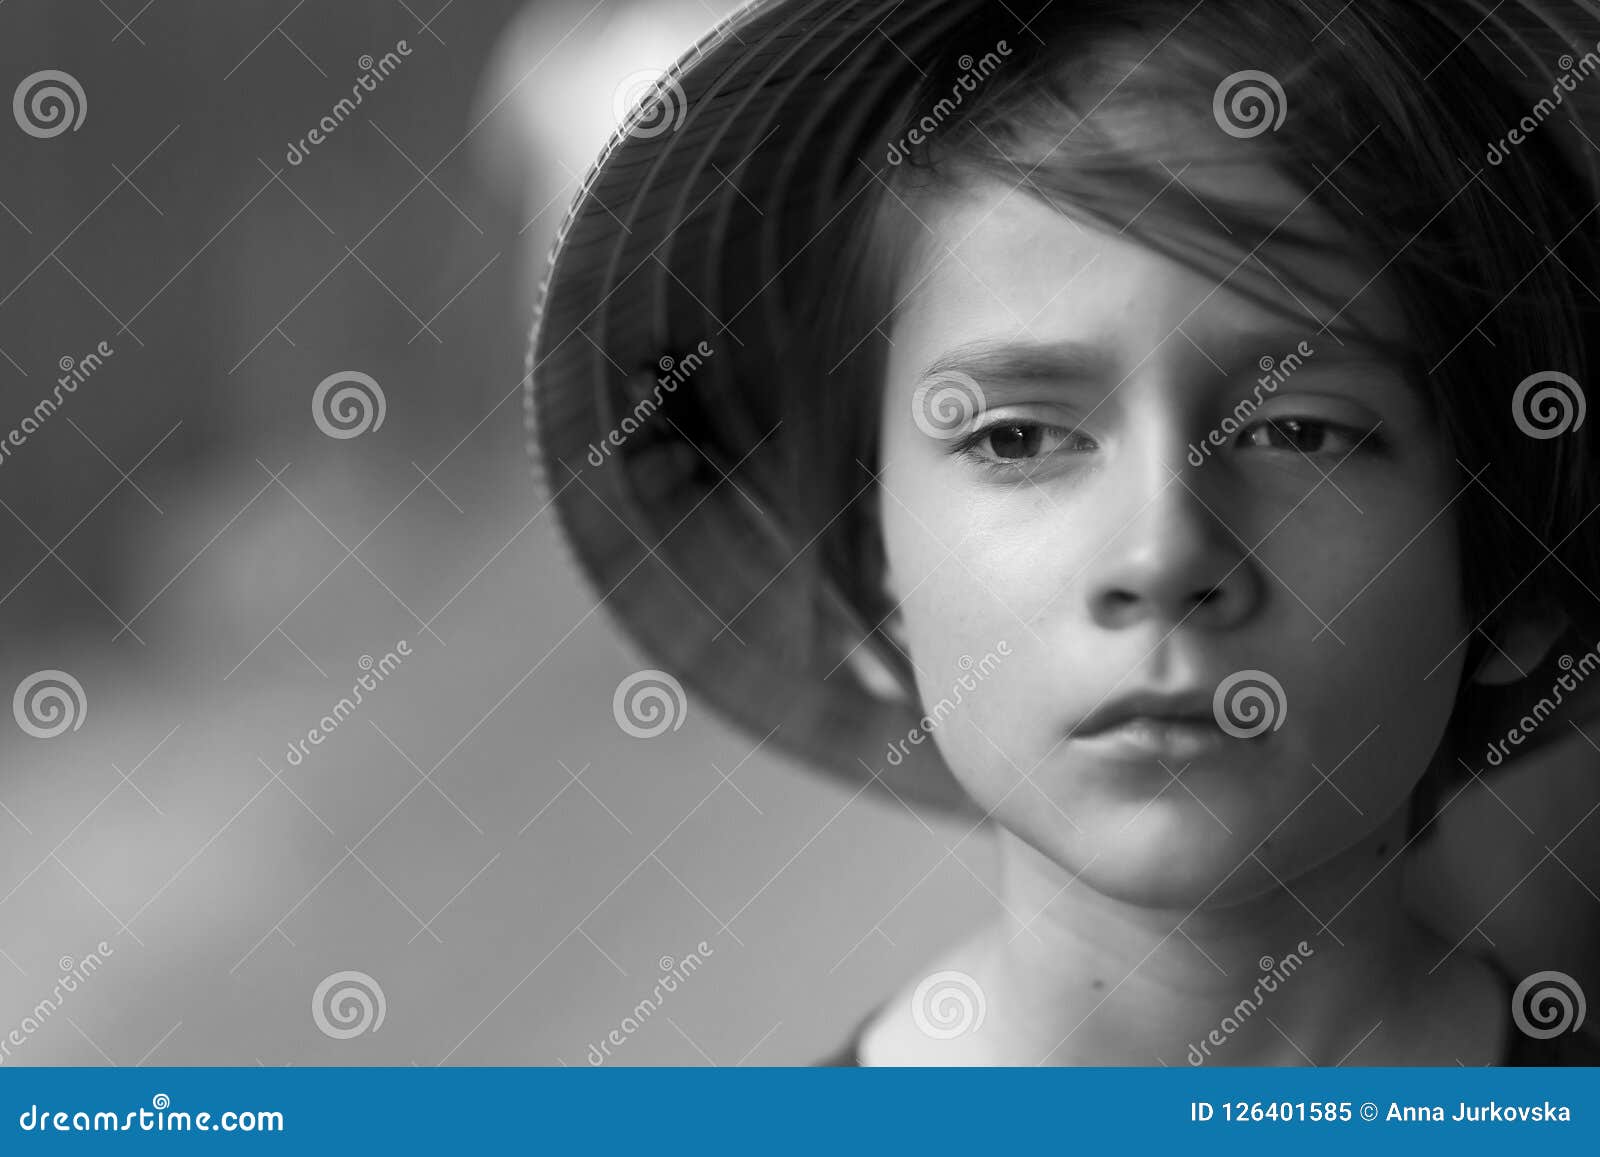 Un Enfant Avec Un Visage Triste Image Stock Image Du Enfant Triste